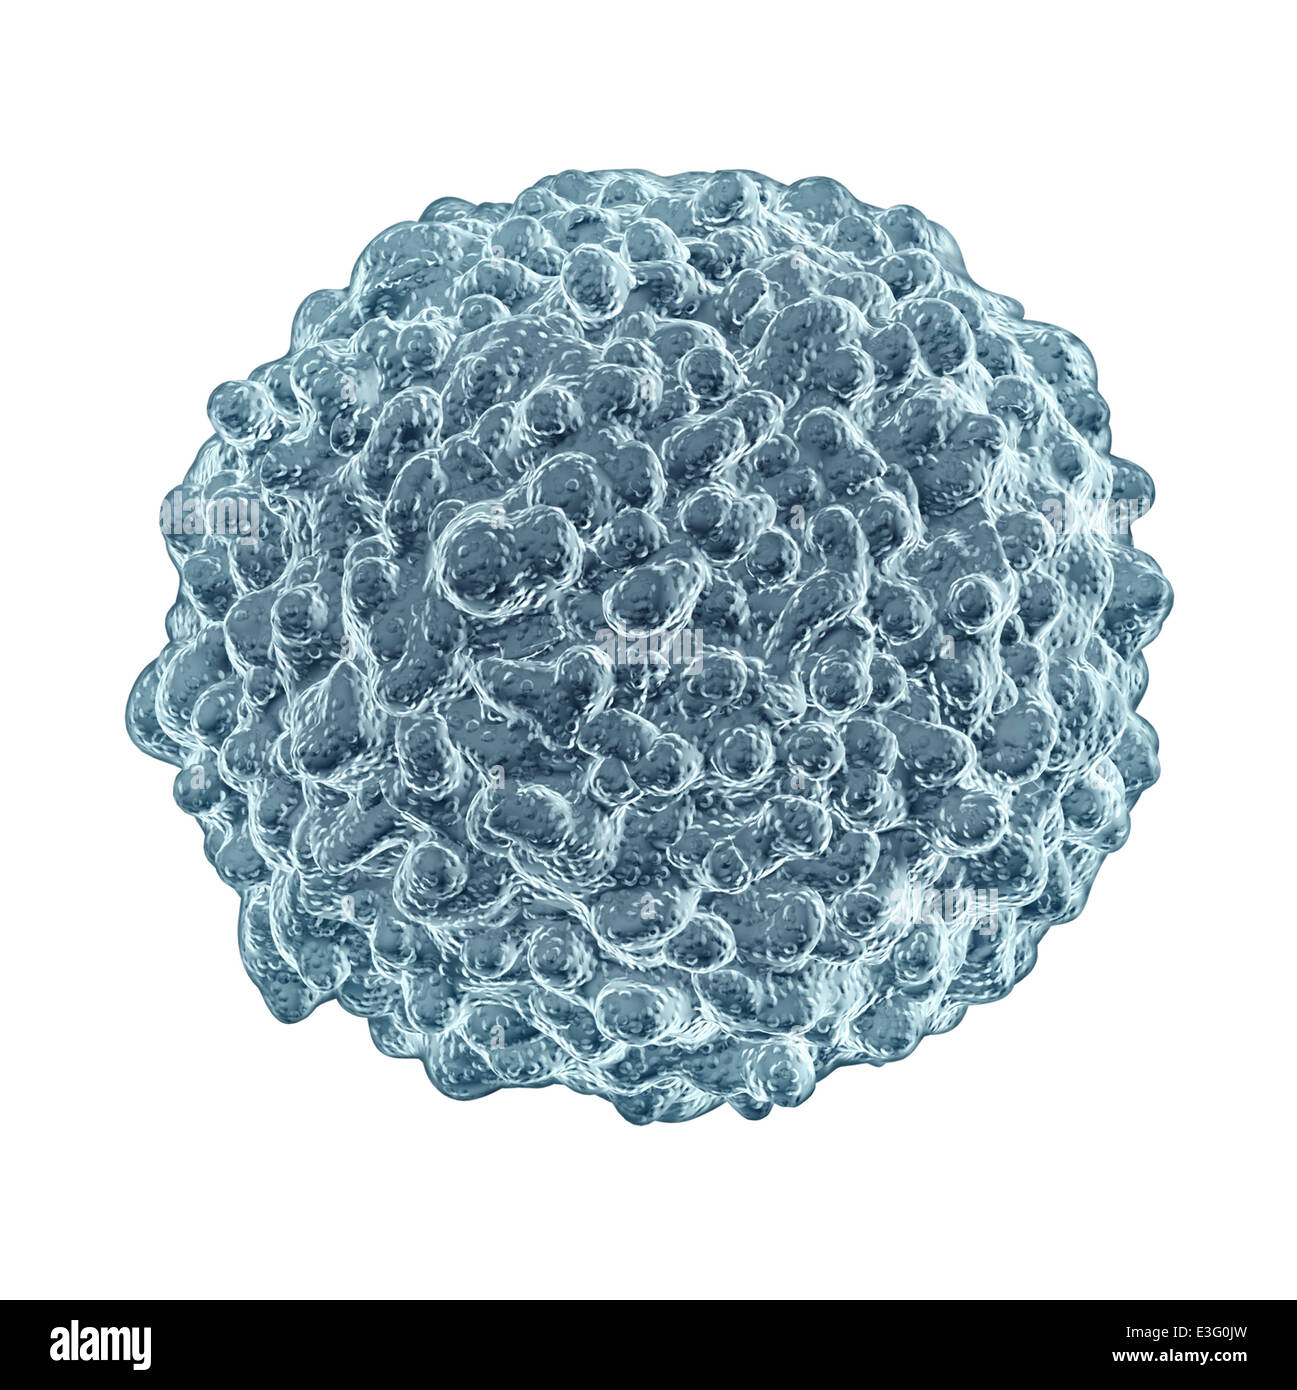 Globuli bianchi il concetto isolato su uno sfondo bianco come un simbolo di microbiologia del sistema immunitario umano difendere e proteggere il corpo dalle malattie infettive. Foto Stock